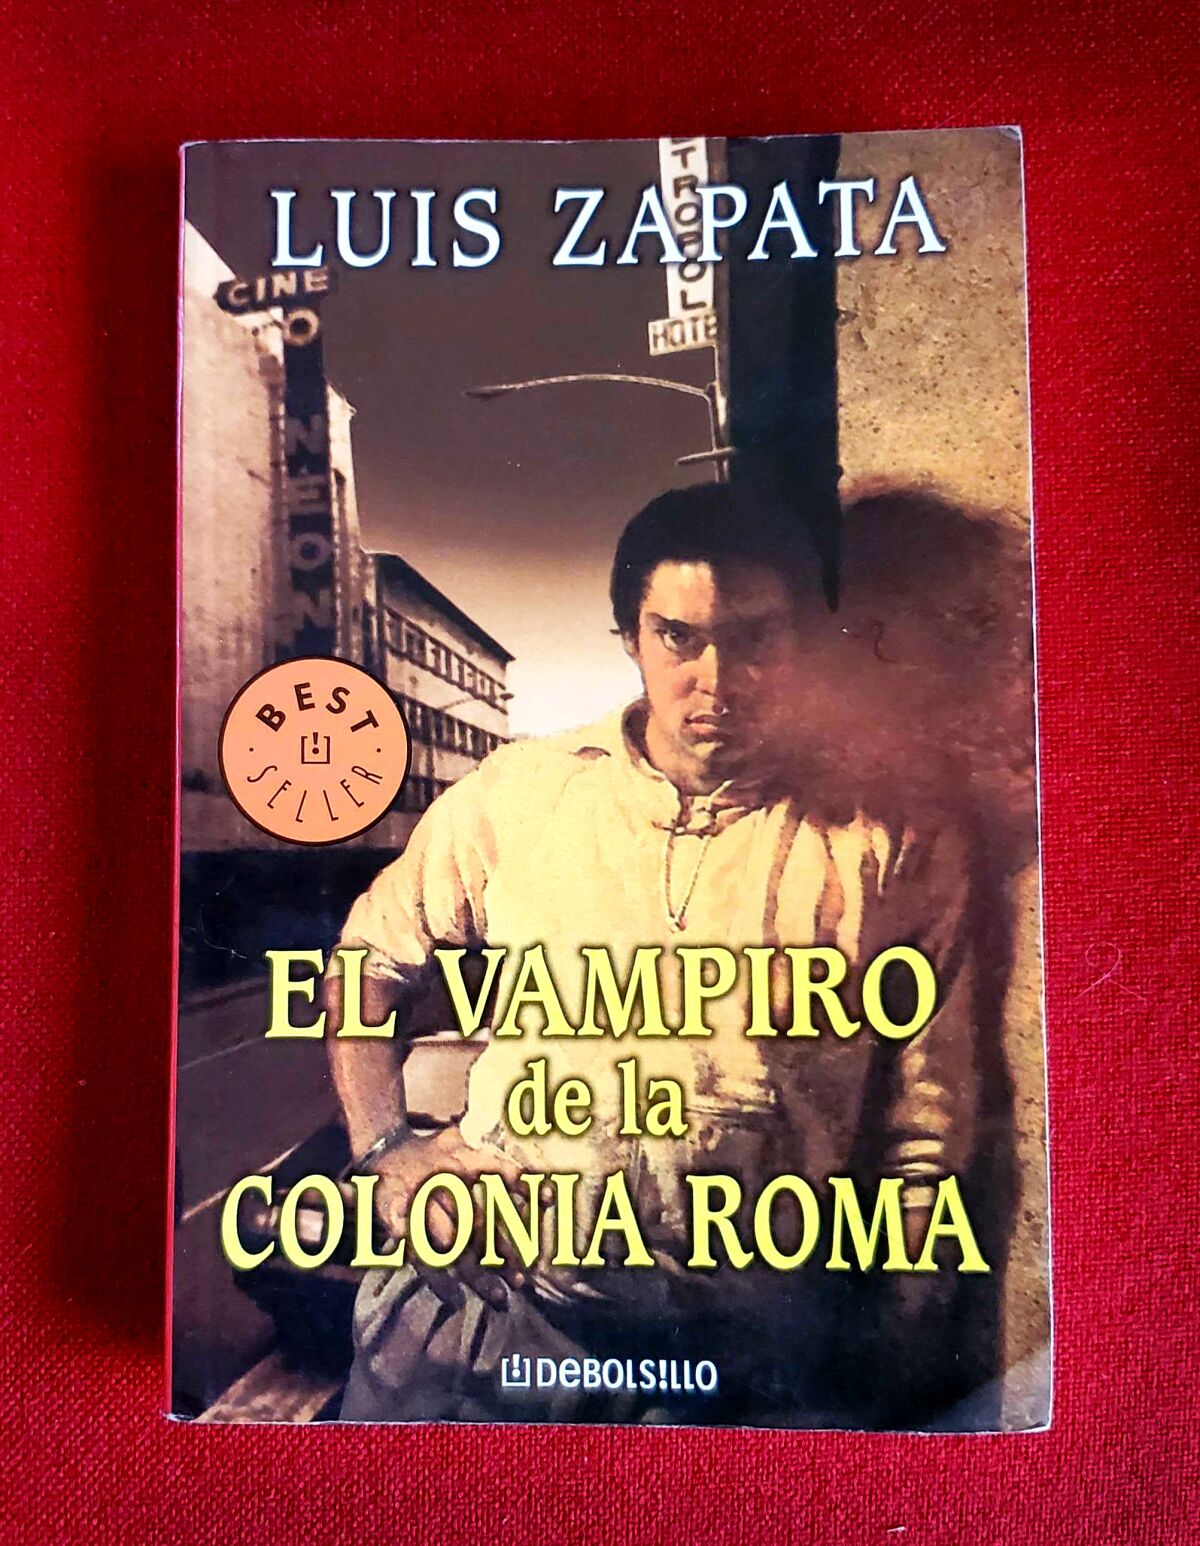 A 2004 Debolsillo edition of Luis Zapata's novel, "El vampiro de la colonia Roma."